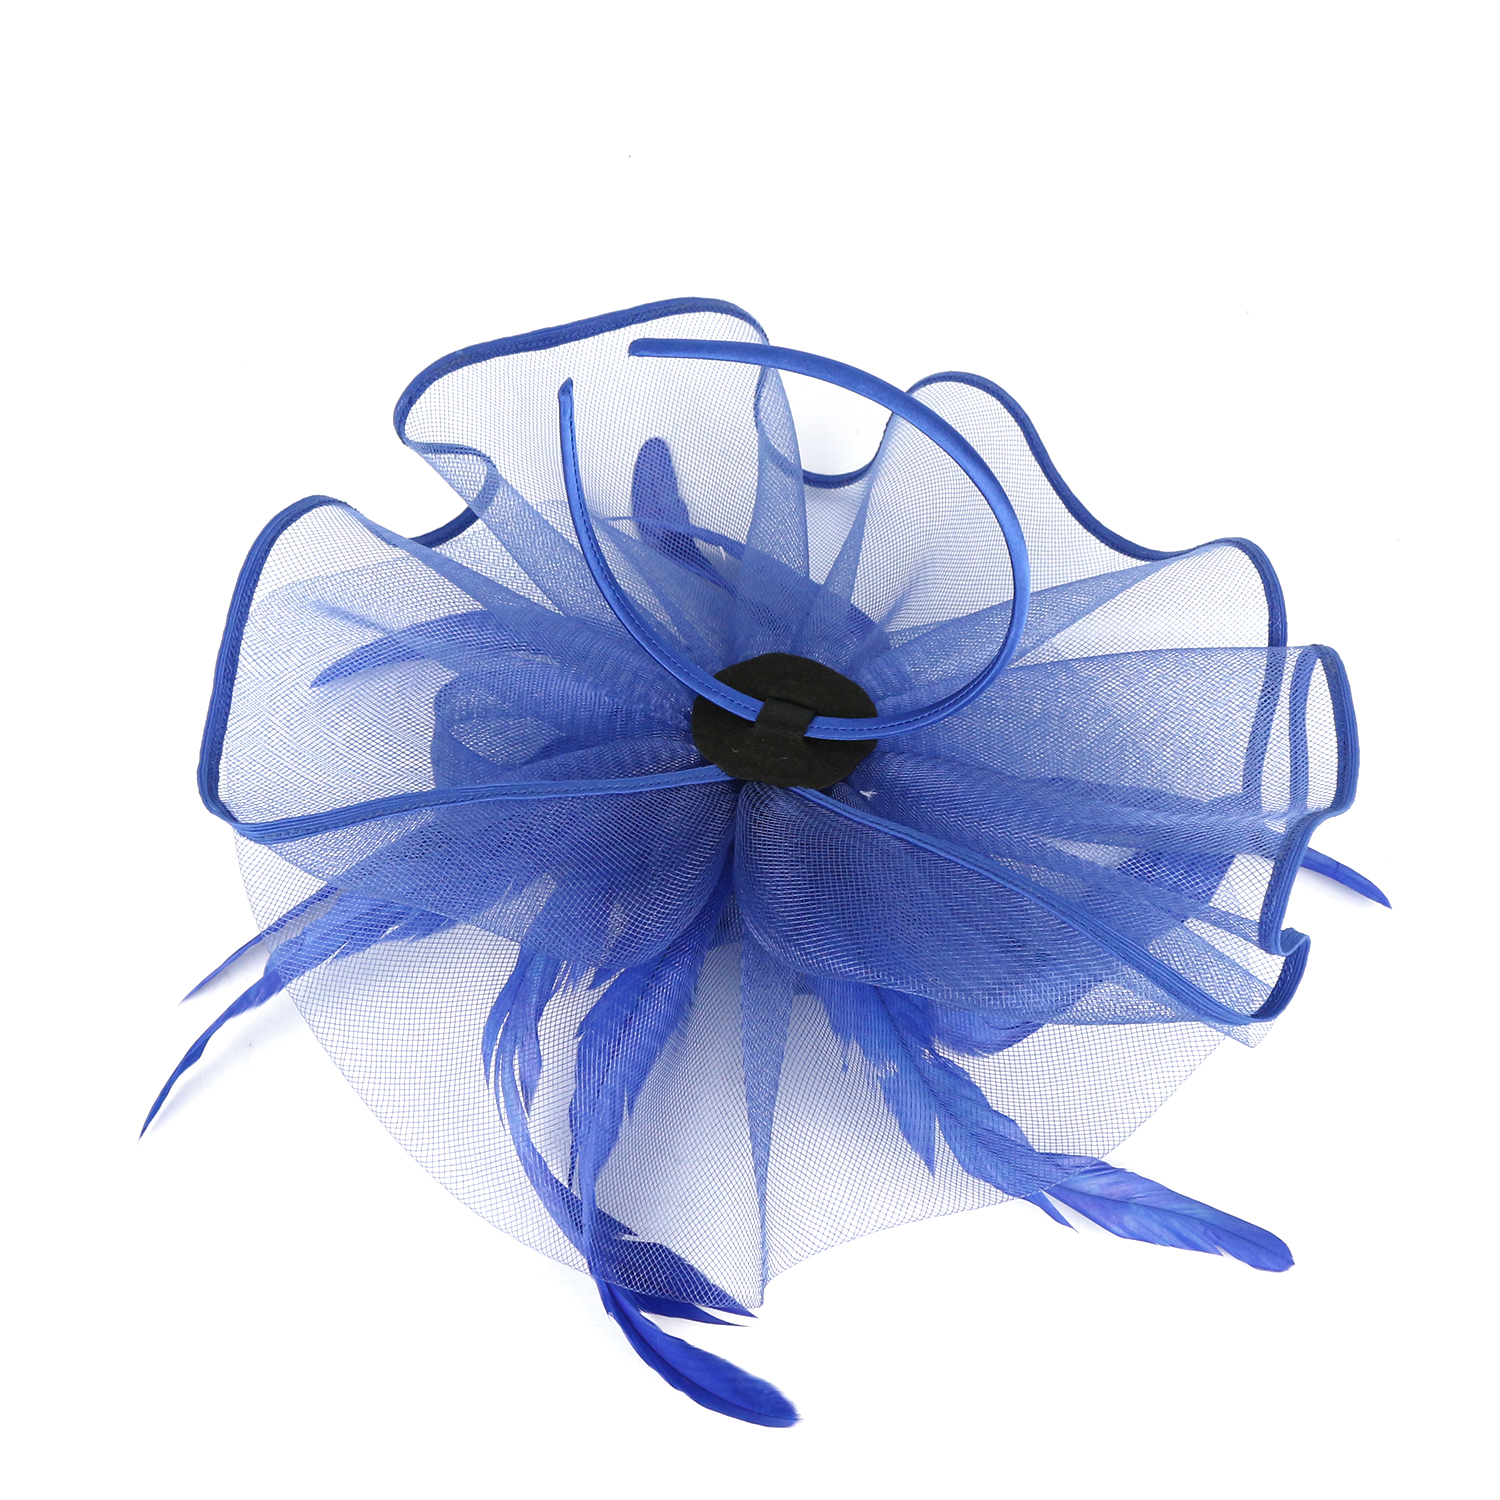 New Blue Fashion Women's Hat Western Style Lanquet Feather Luxury Headwear Party Gift Headwear XMZ-0023-A